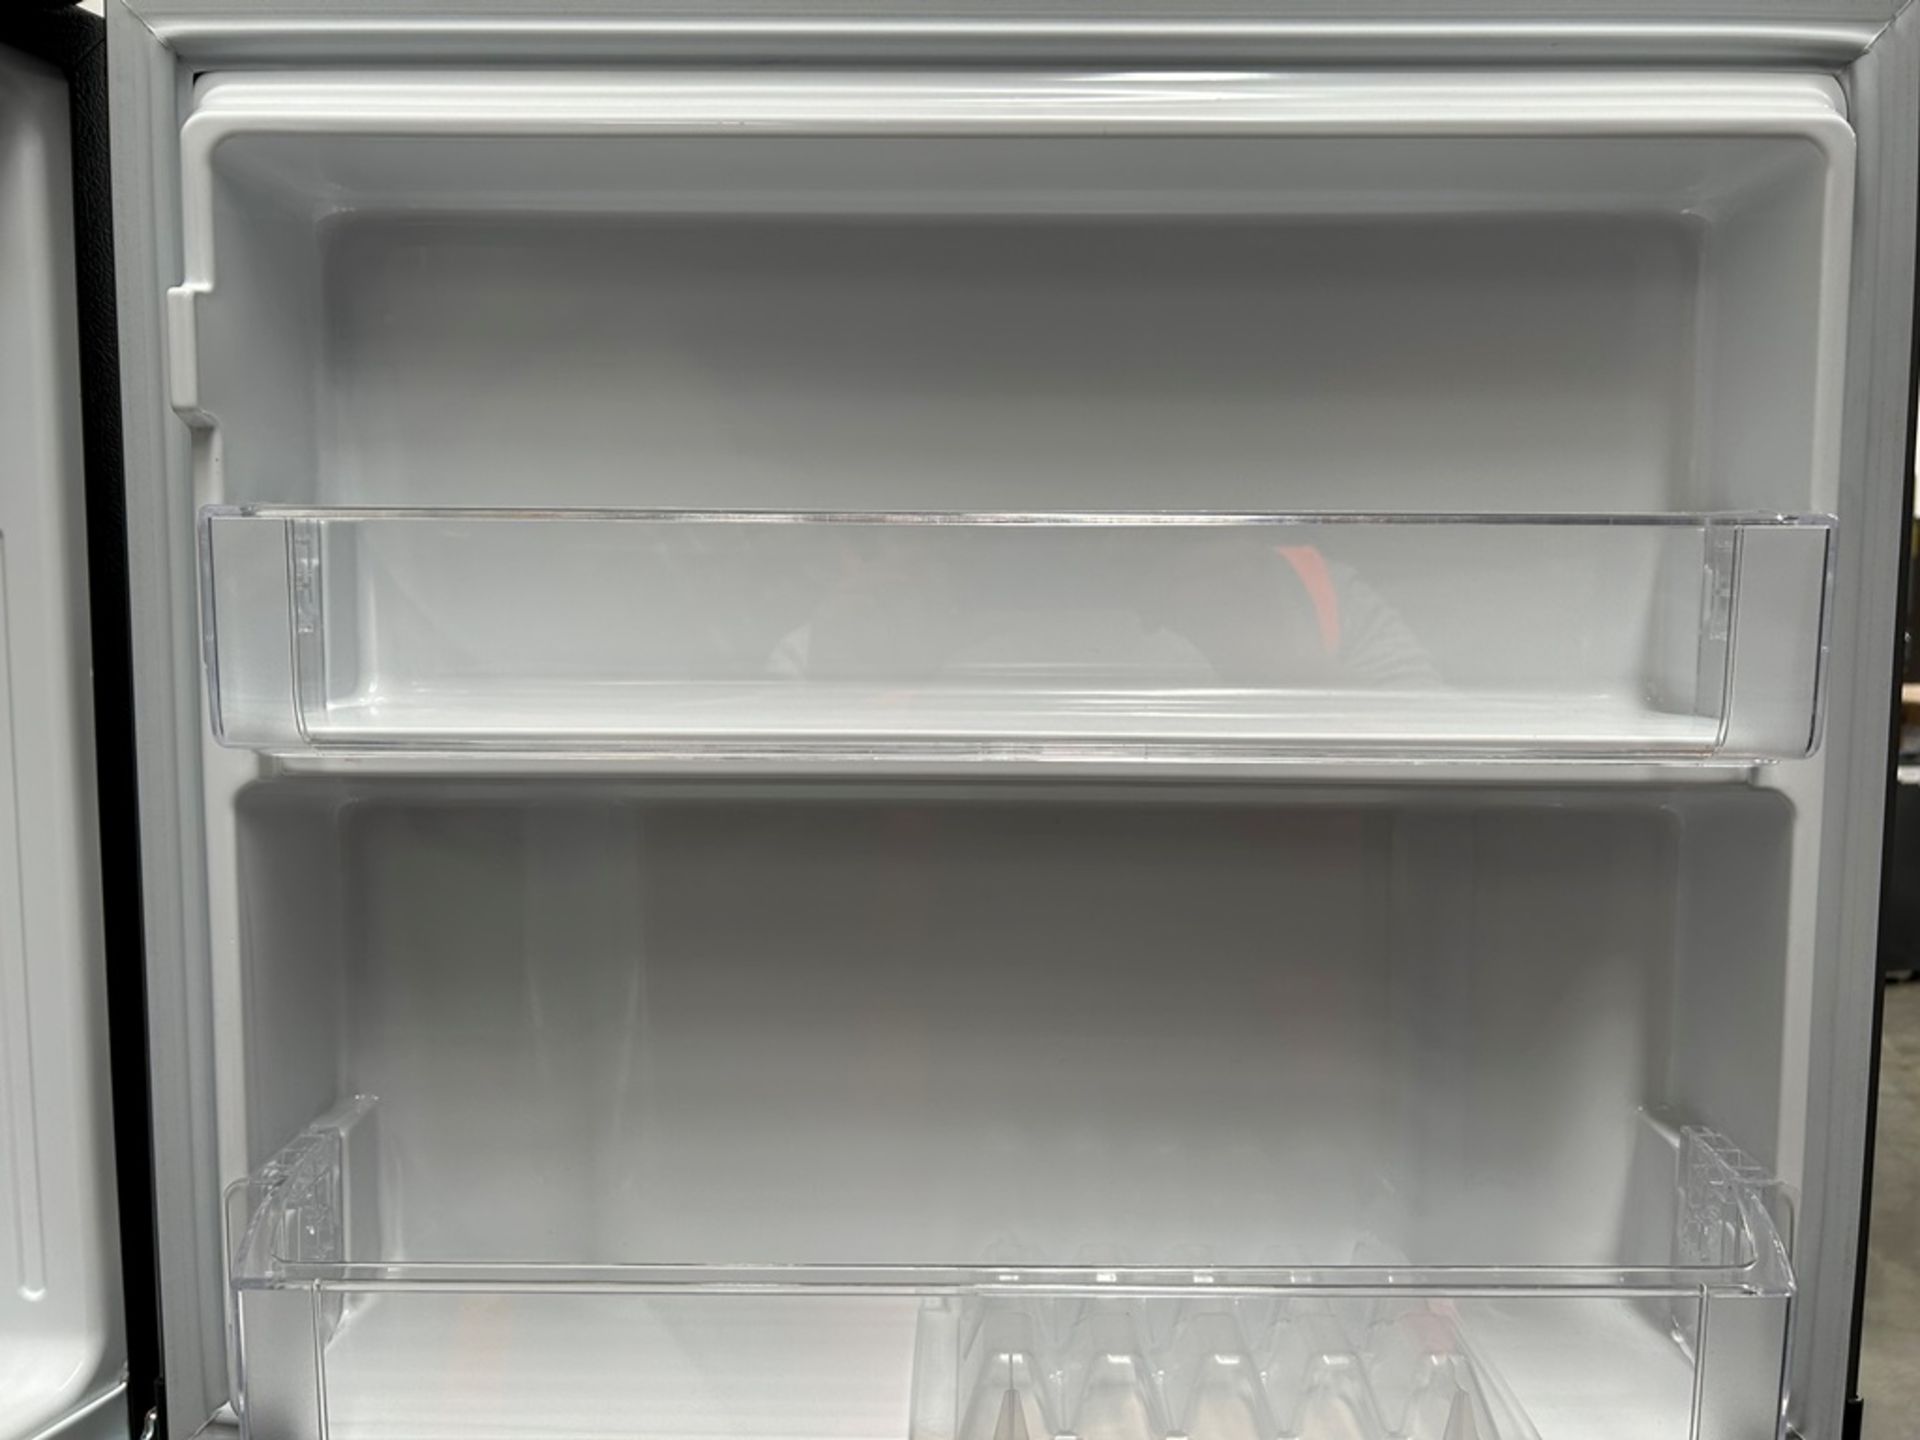 Lote de 2 refrigeradores contiene: 1 refrigerador Marca MABE, Modelo RME360PVMRM, Serie 01988, Colo - Image 12 of 18